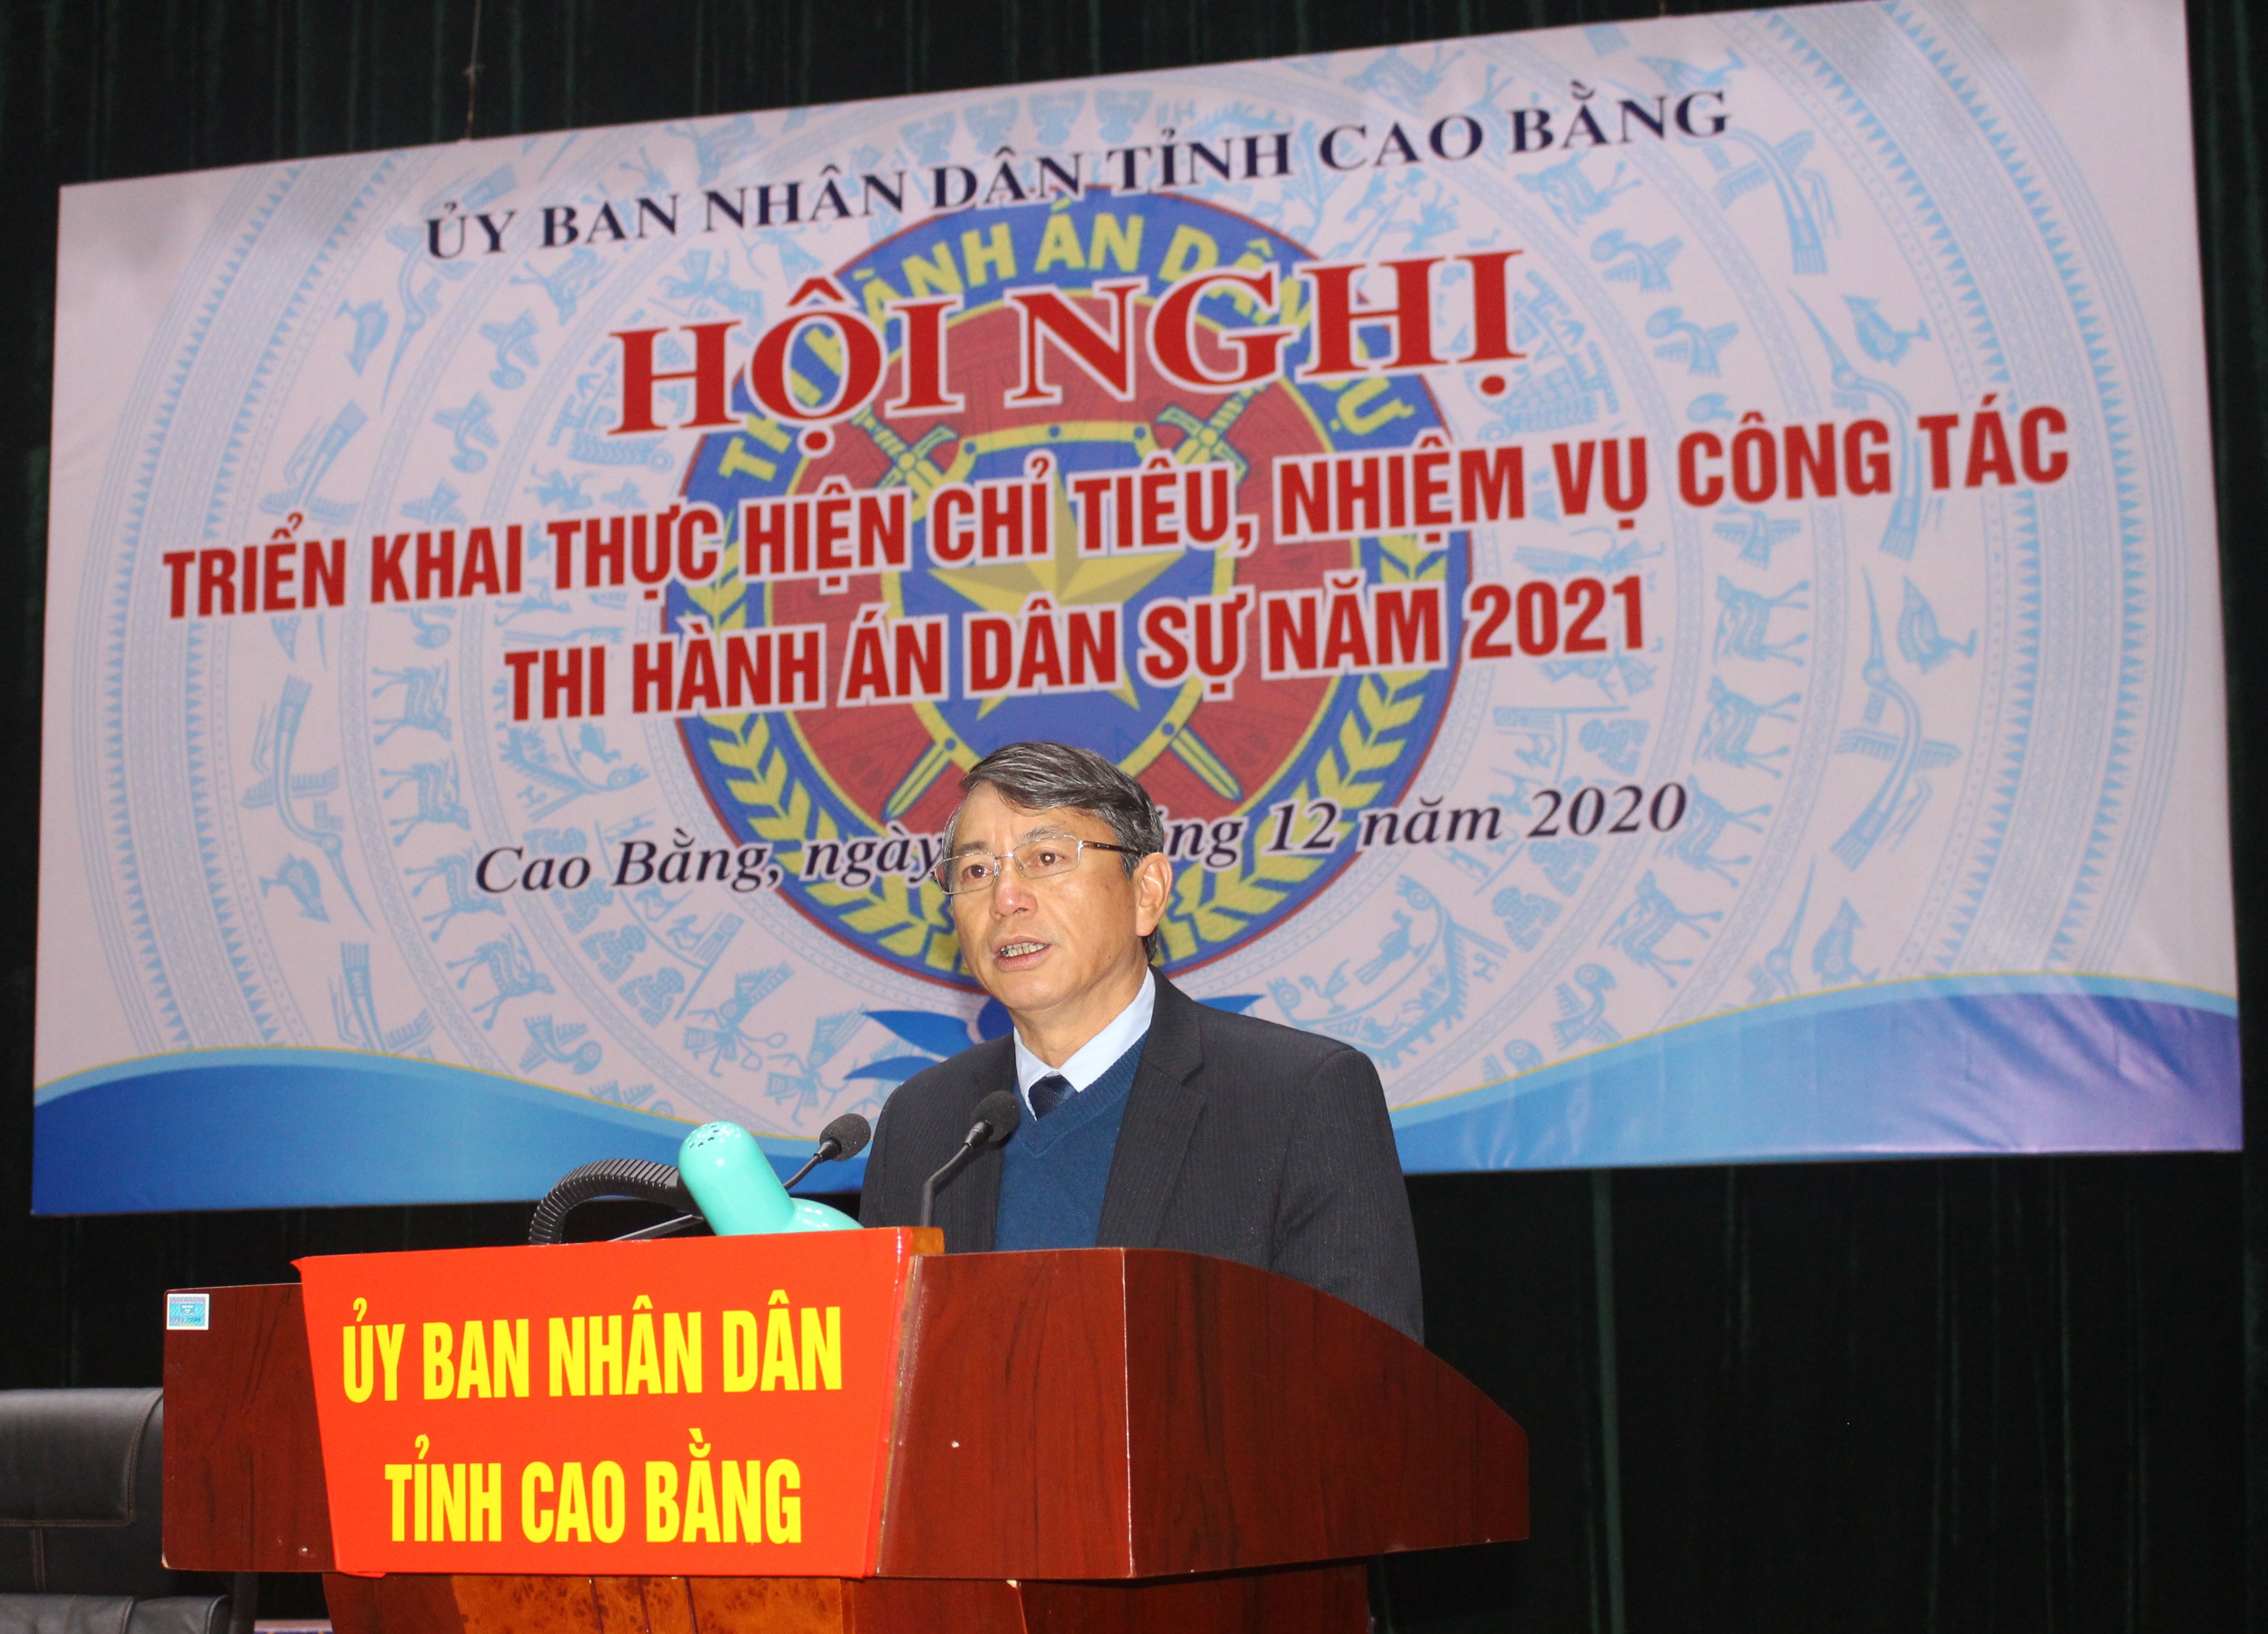 Ủy ban nhân dân tỉnh Cao Bằng tổ chức Hội nghị triển khai công tác Thi hành án dân sự năm 2021